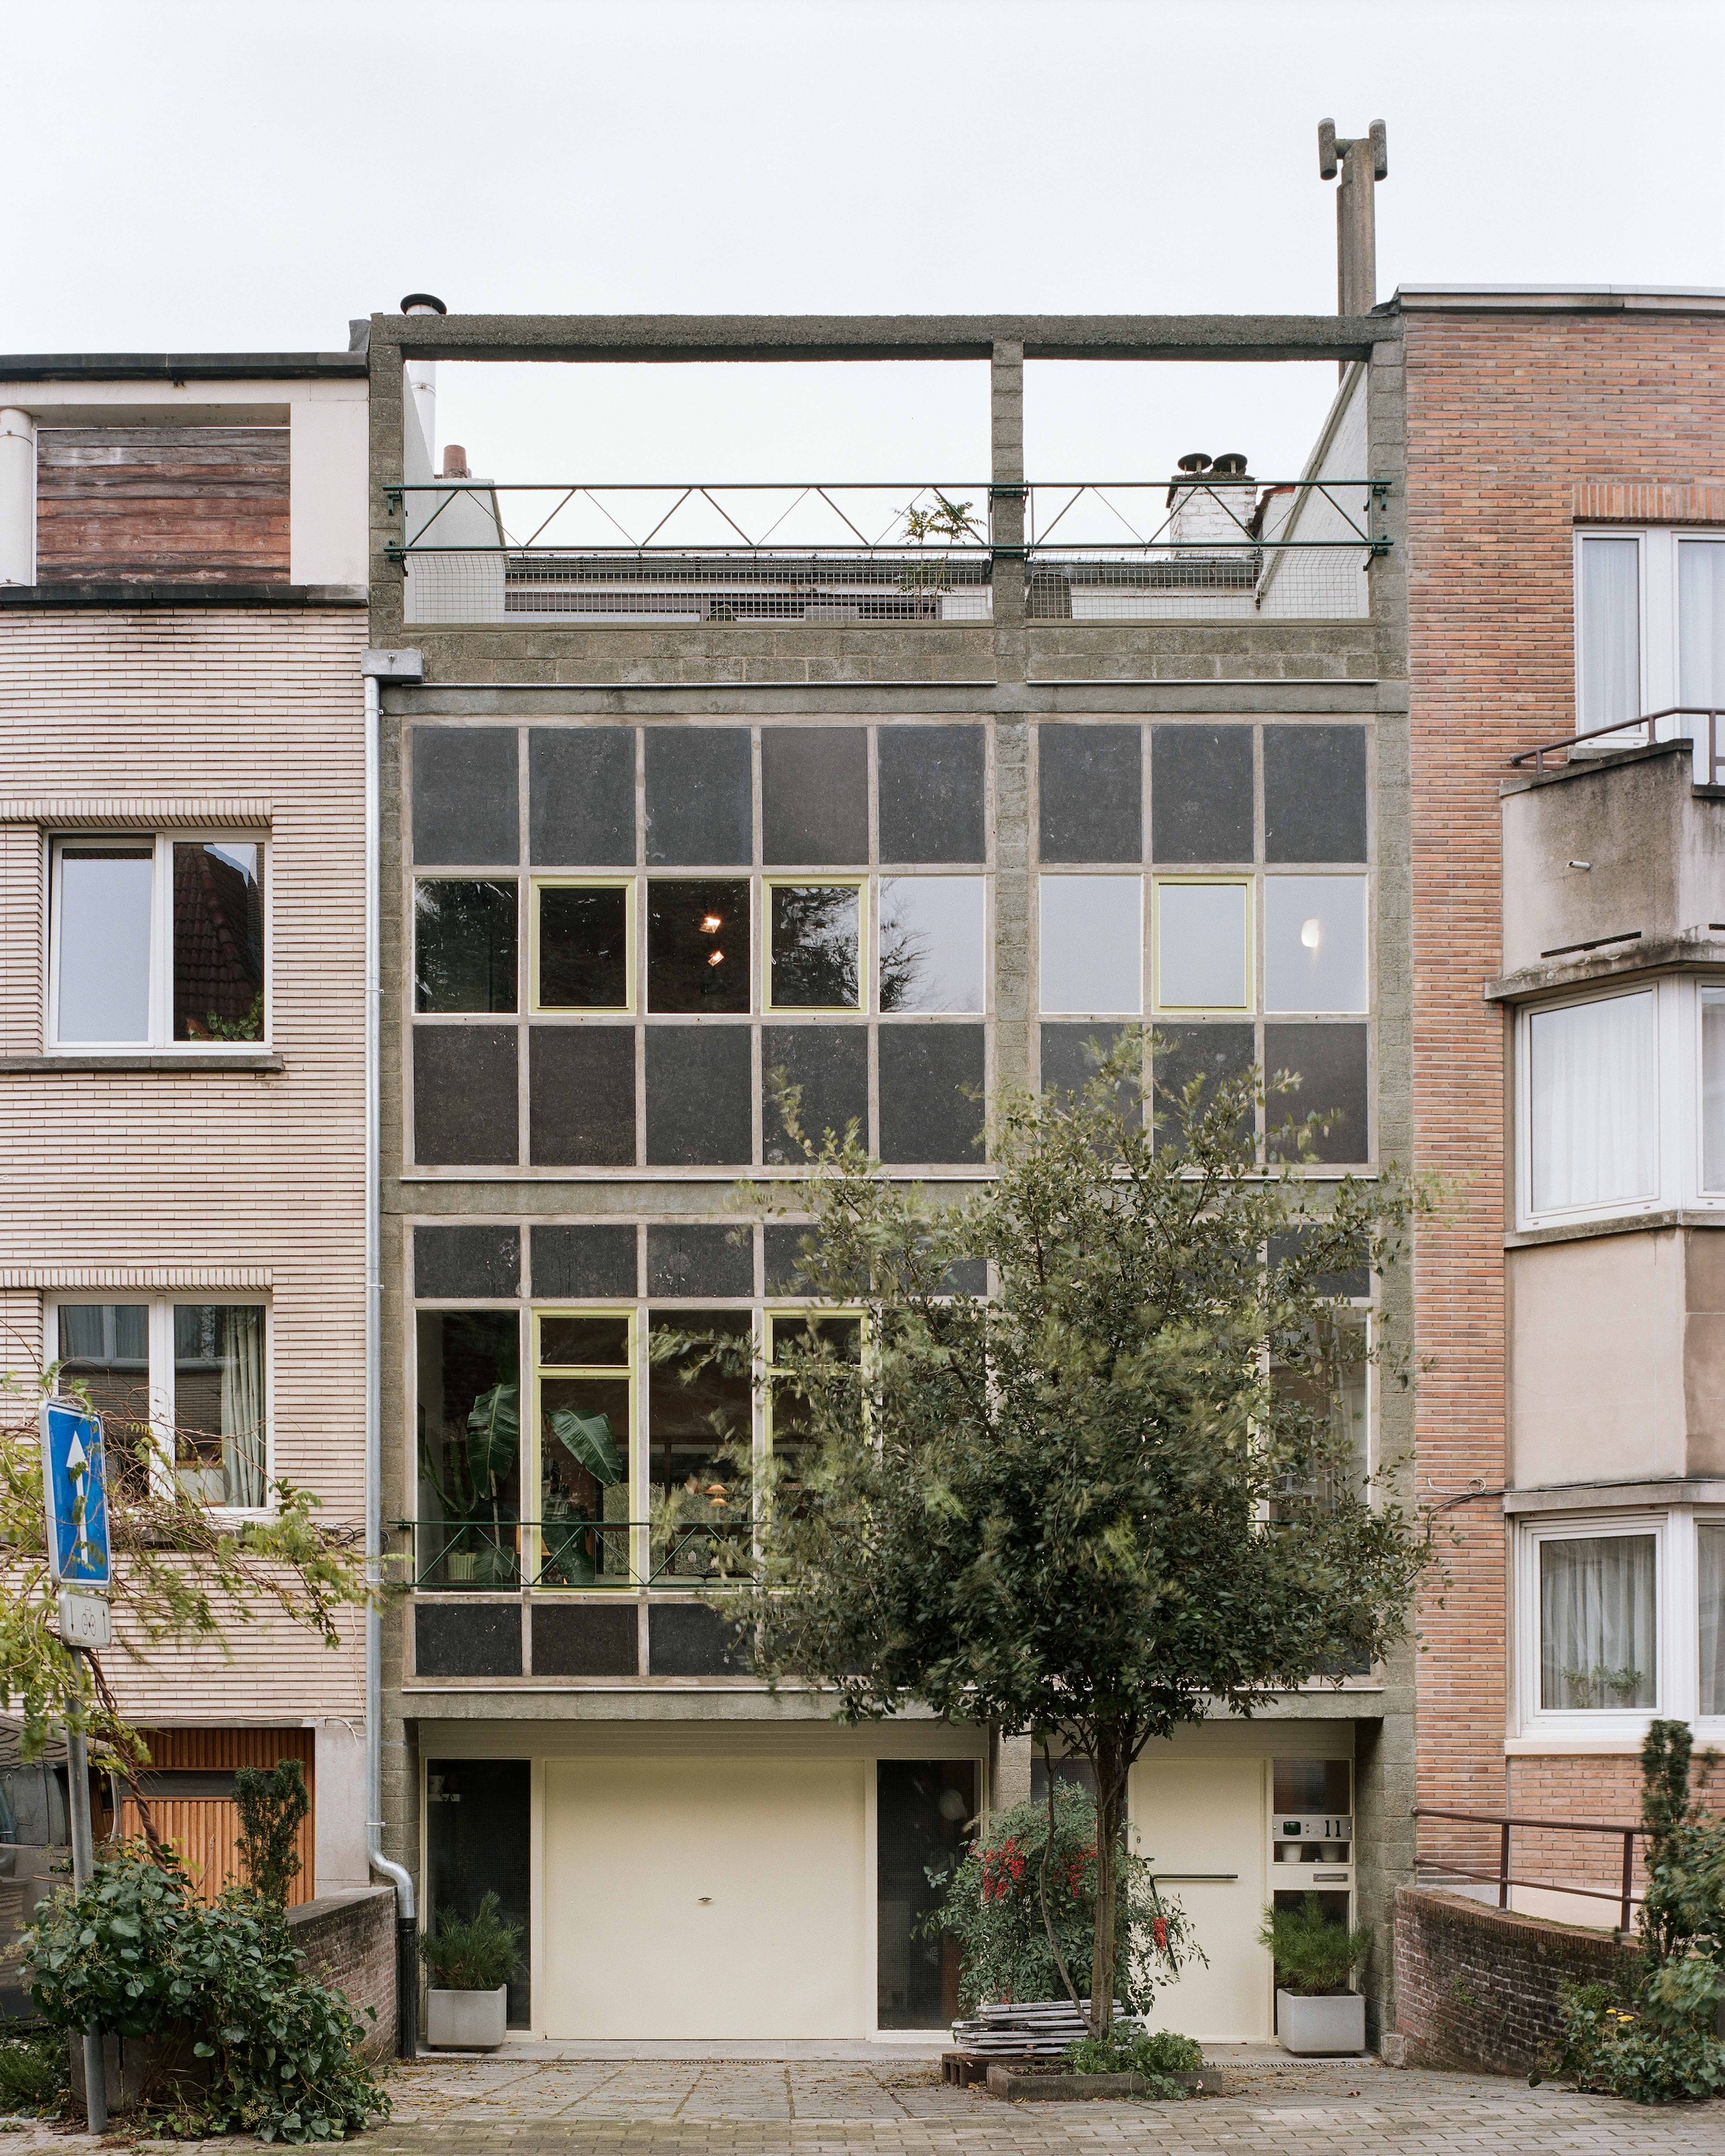 willy van der meeren 1960s building in belgium updated by atelier avondzon. 272